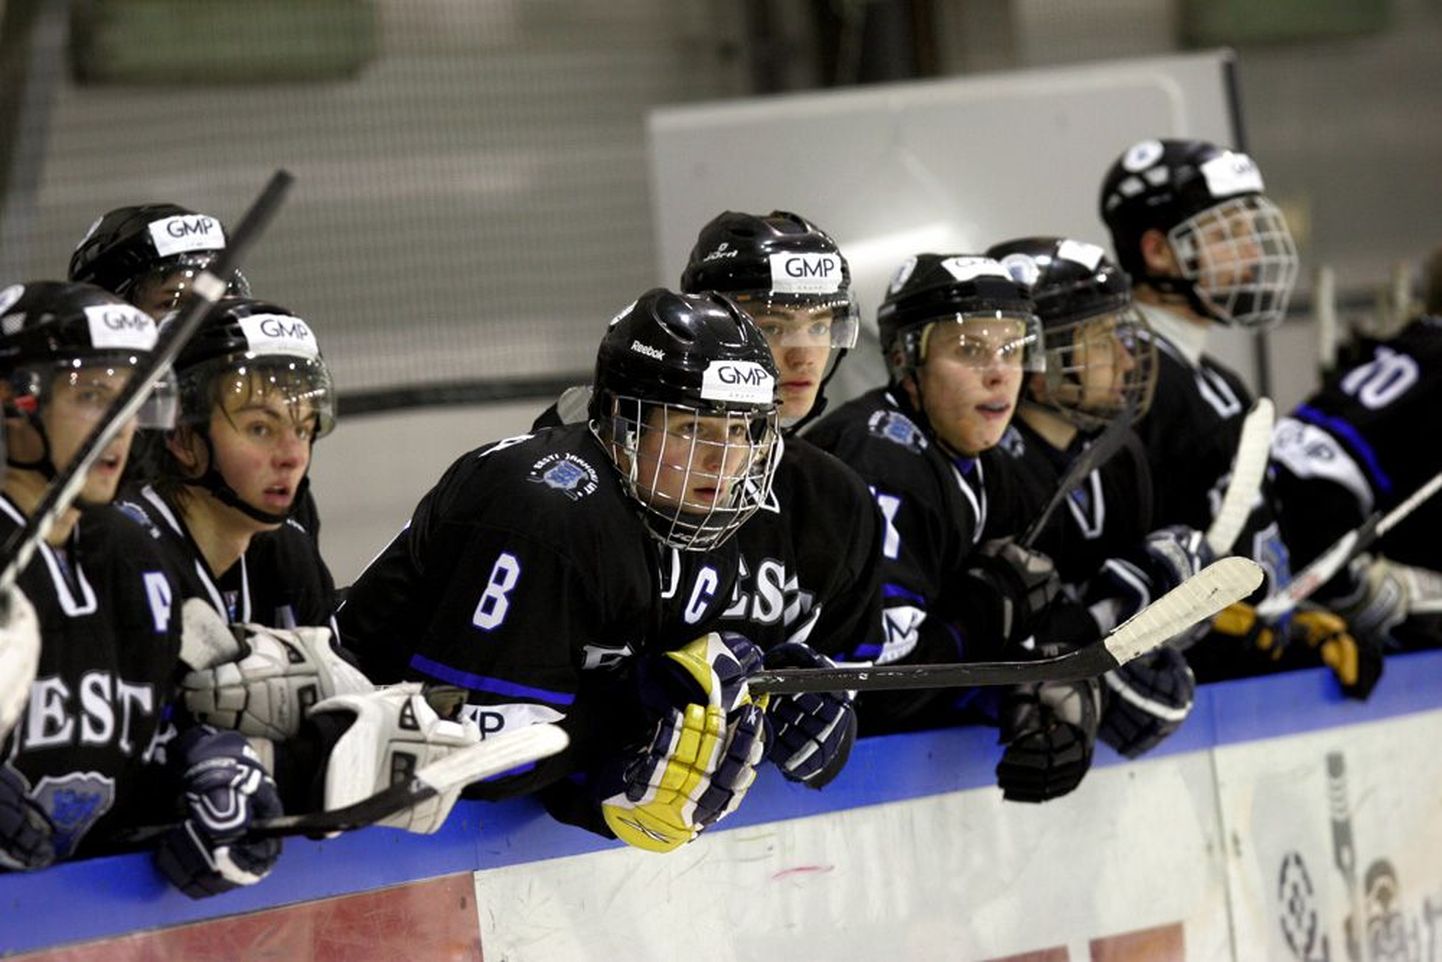 Eesti U20 koondise vahetusmängijate pingil istuvad liikmed jälgivad platsil toimuvat. Alla 18-aastased mängijad tunneb ära näo ees kantava kaitsevõre järgi.